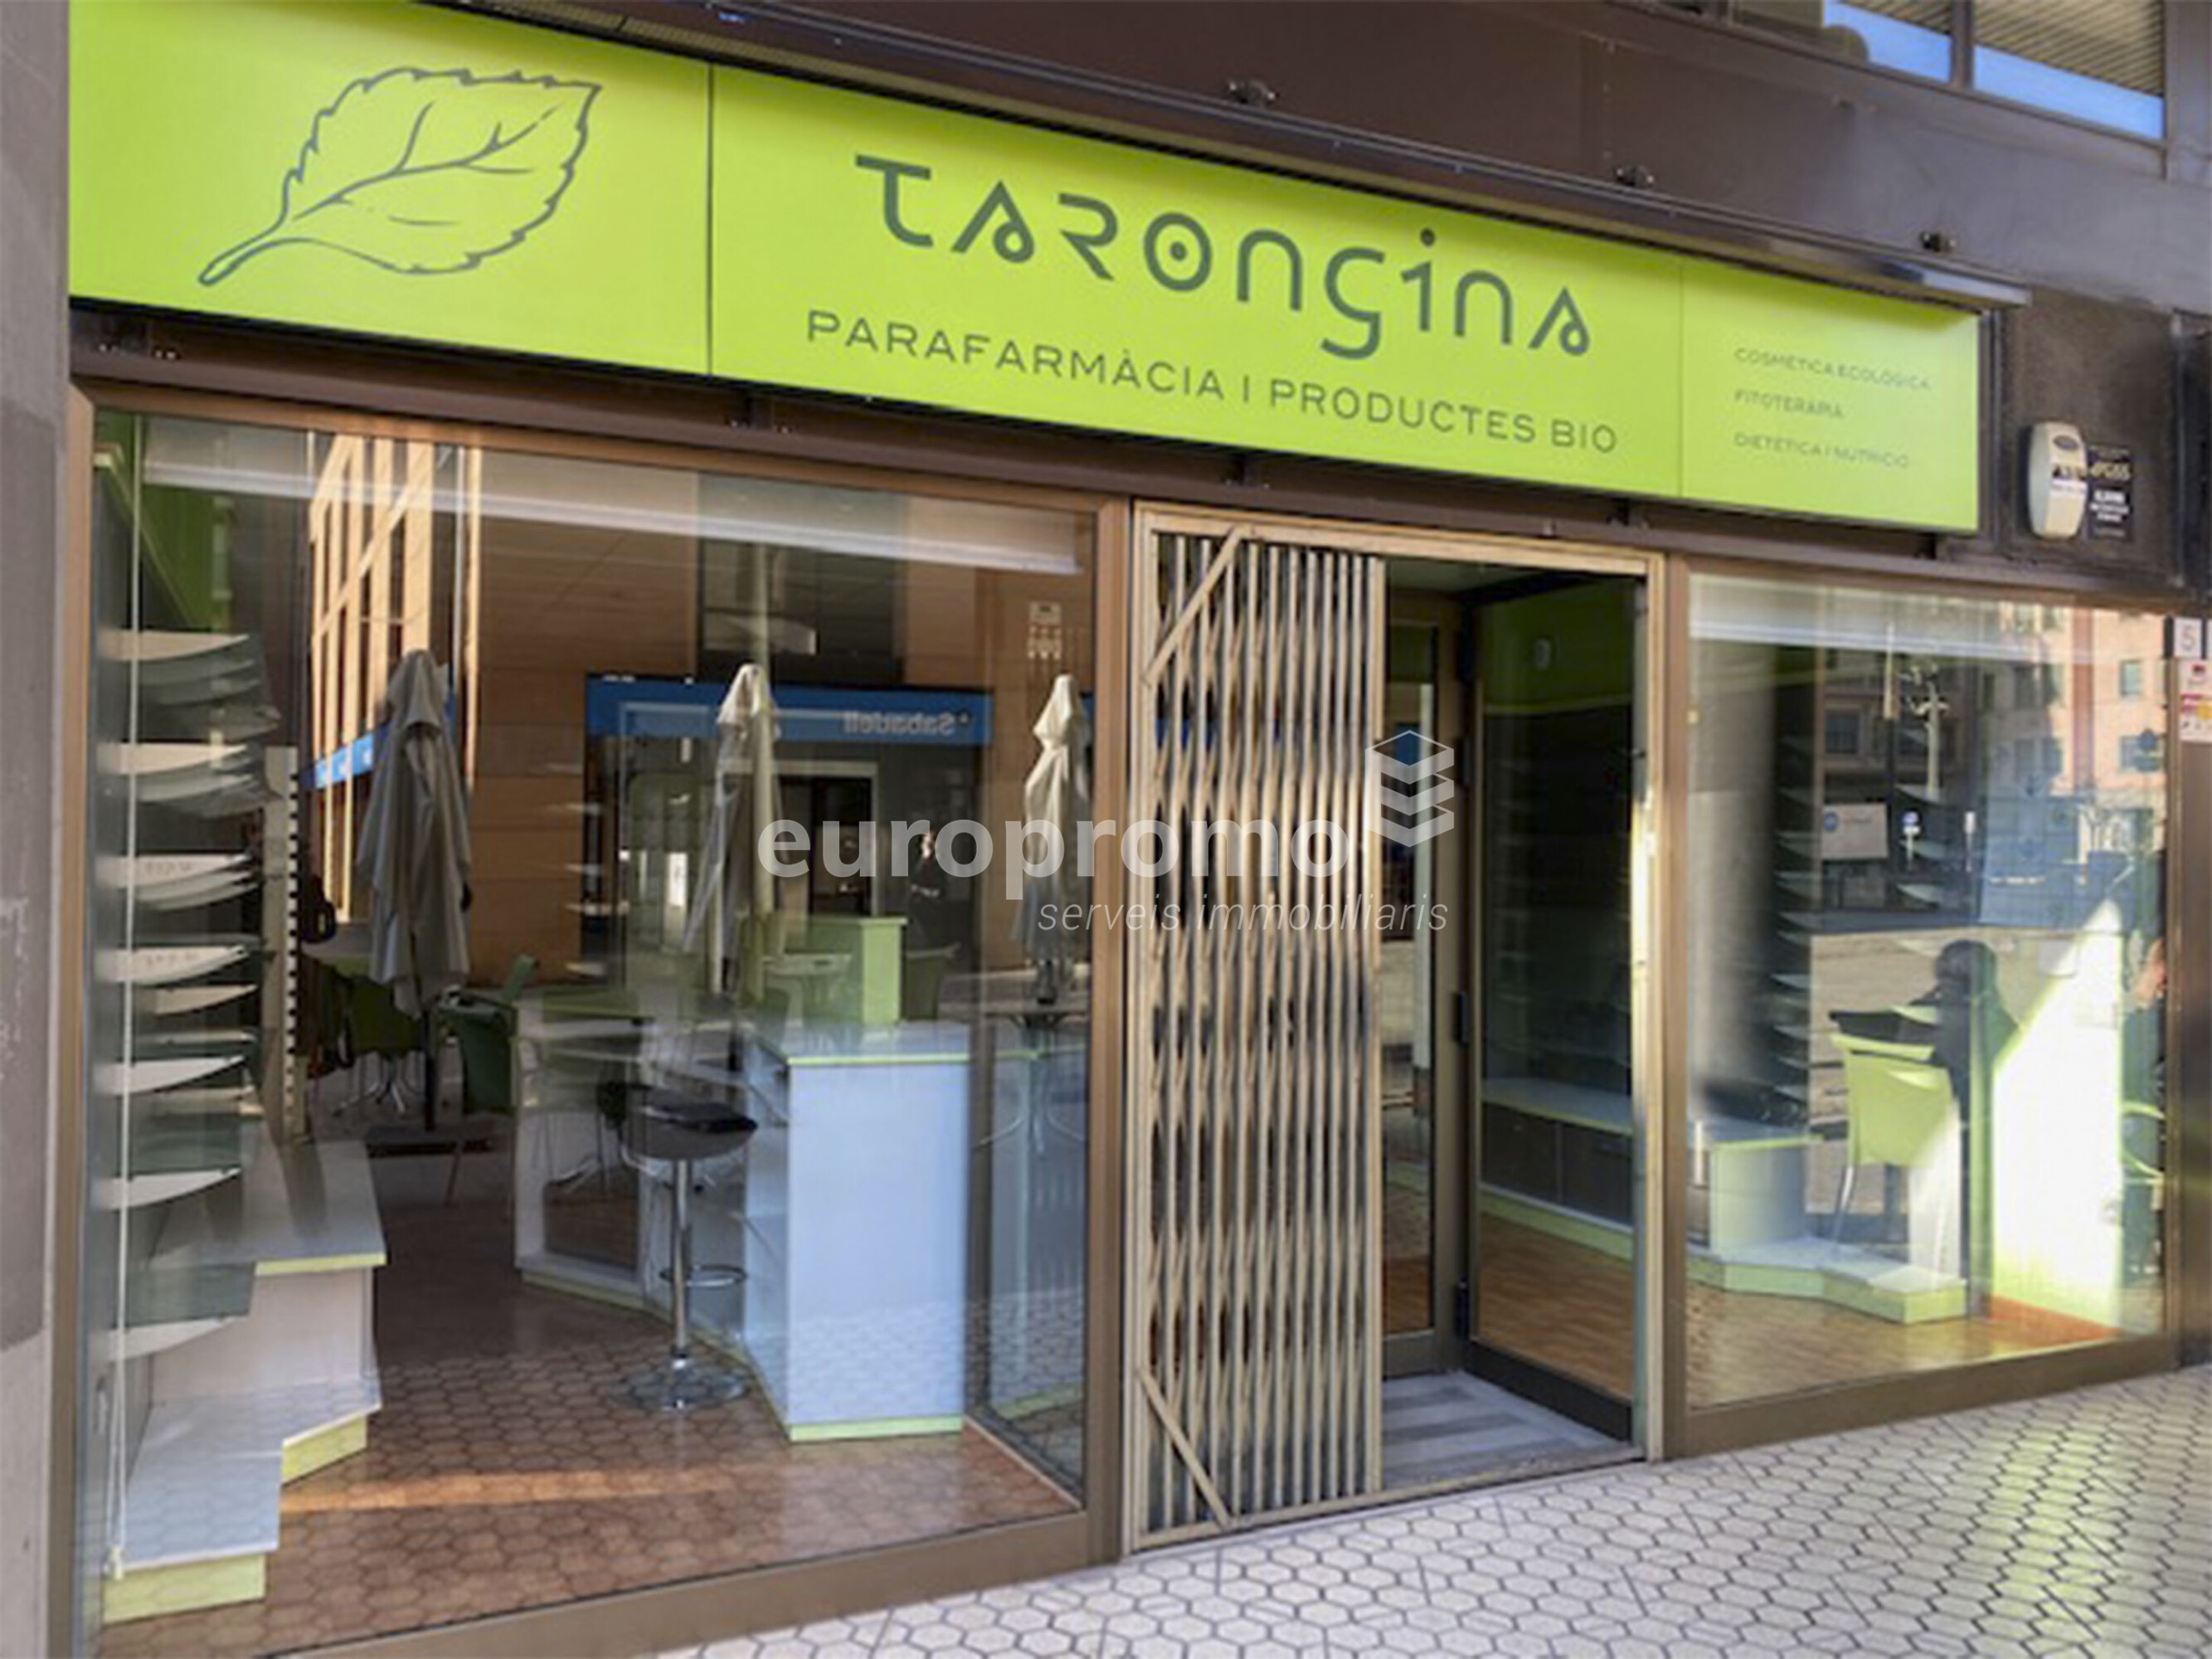 Local comercial de 60m2 situat en el  centre de Girona plaça Josep pla!